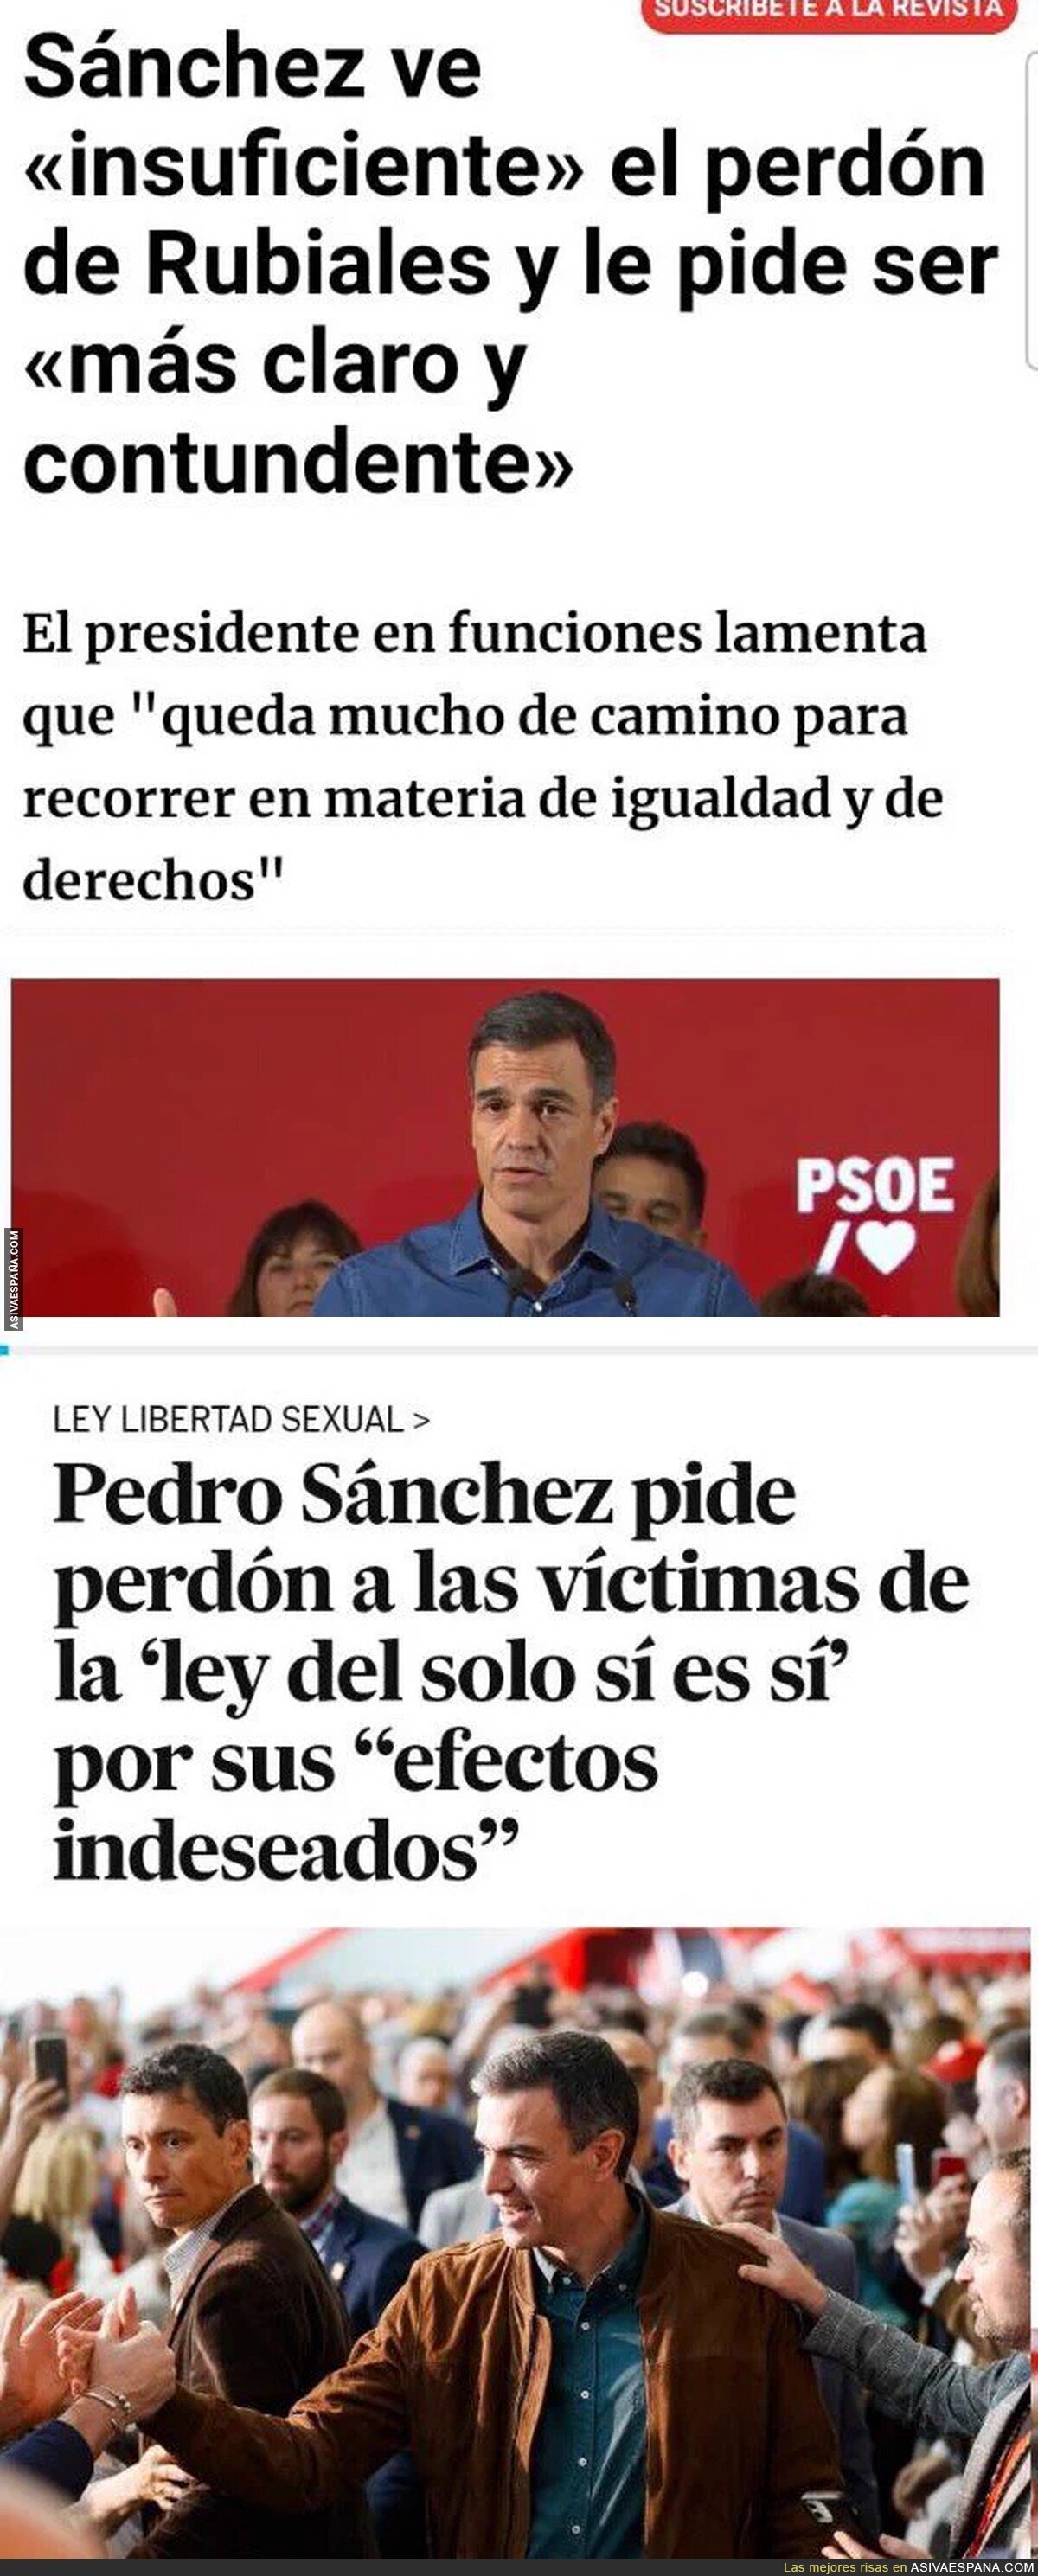 El perdón de Pedro Sánchez